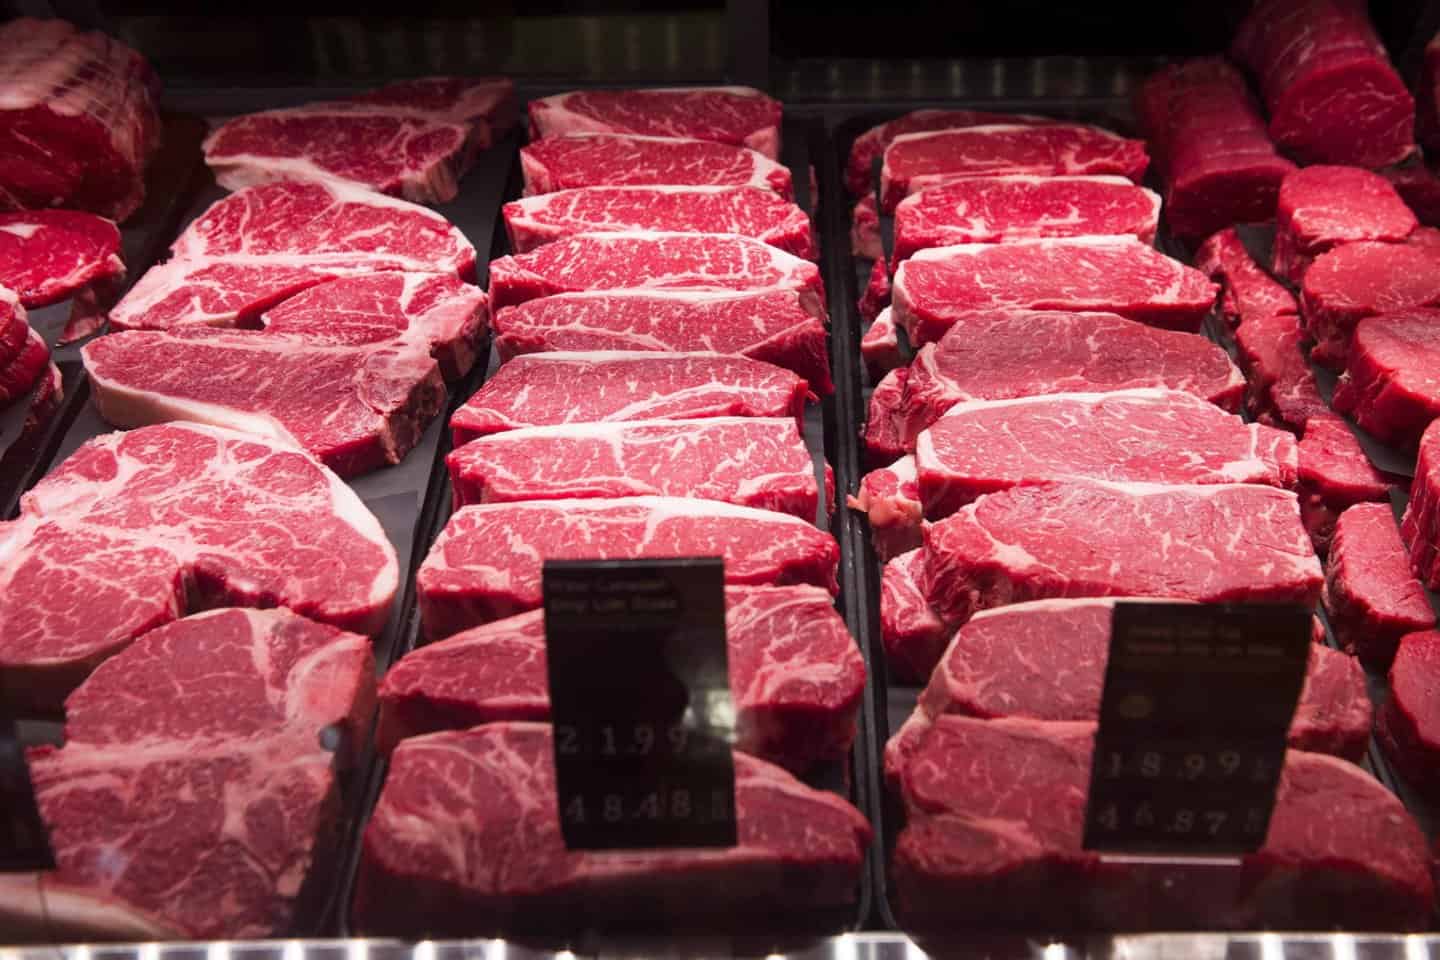 В 2022 году в стране произведено 441 тысяча тонн мяса — на 3% больше чем в предыдущем изображение публикации